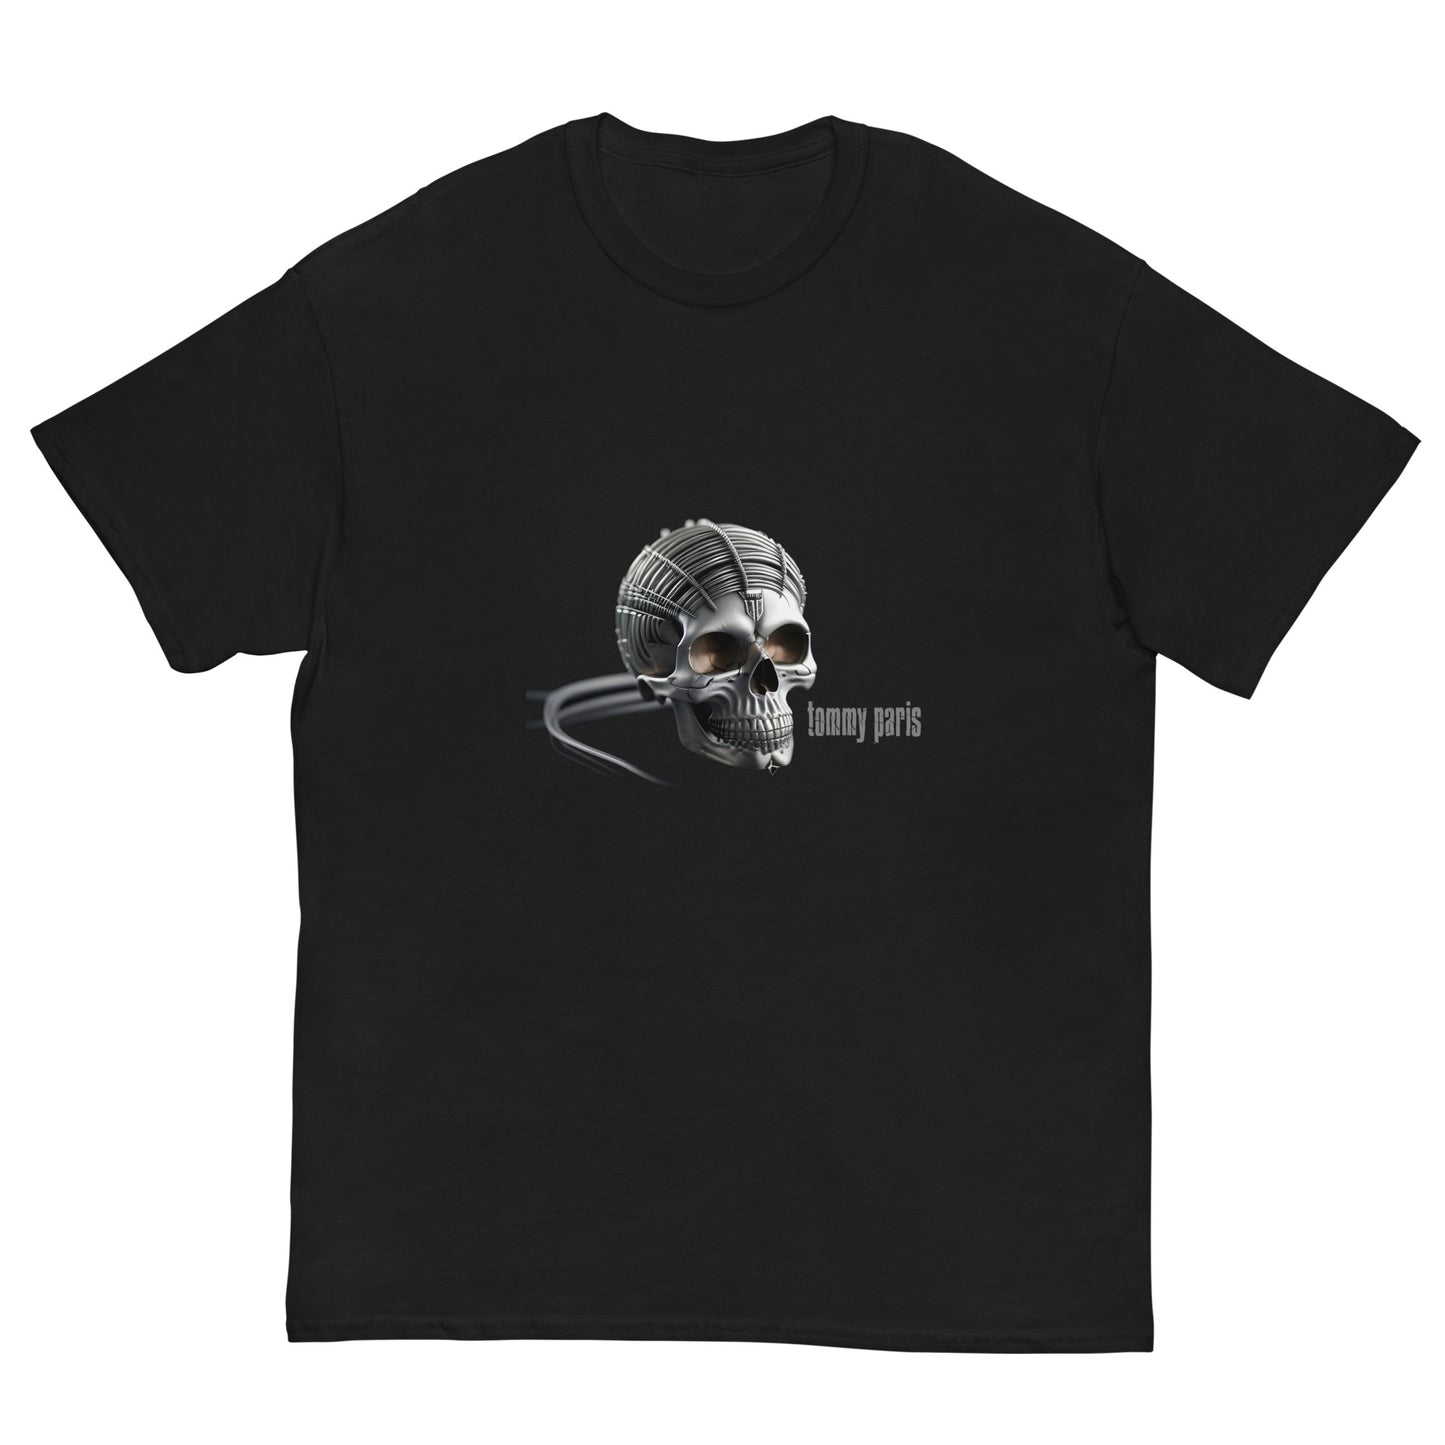 Tommy Paris Debut Solo Album T-Shirt